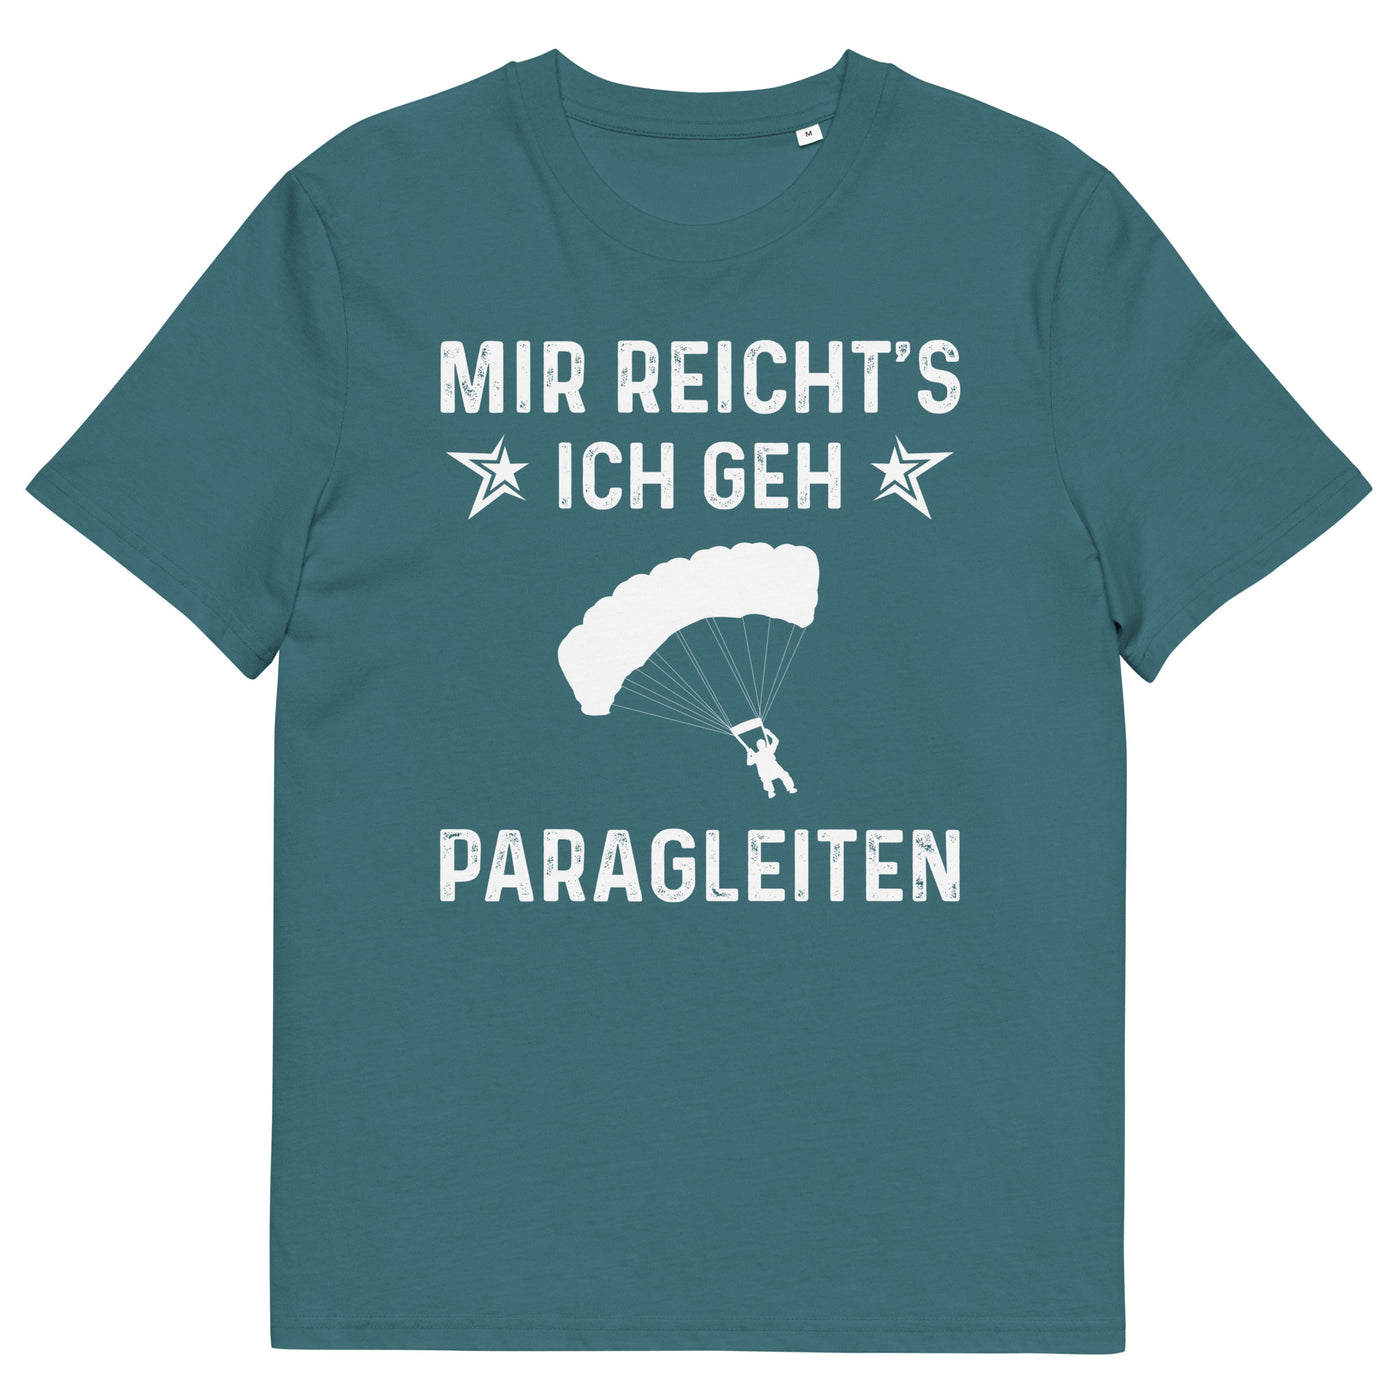 Mir Reicht's Ich Gen Paragleiten - Herren Premium Organic T-Shirt berge xxx yyy zzz Stargazer